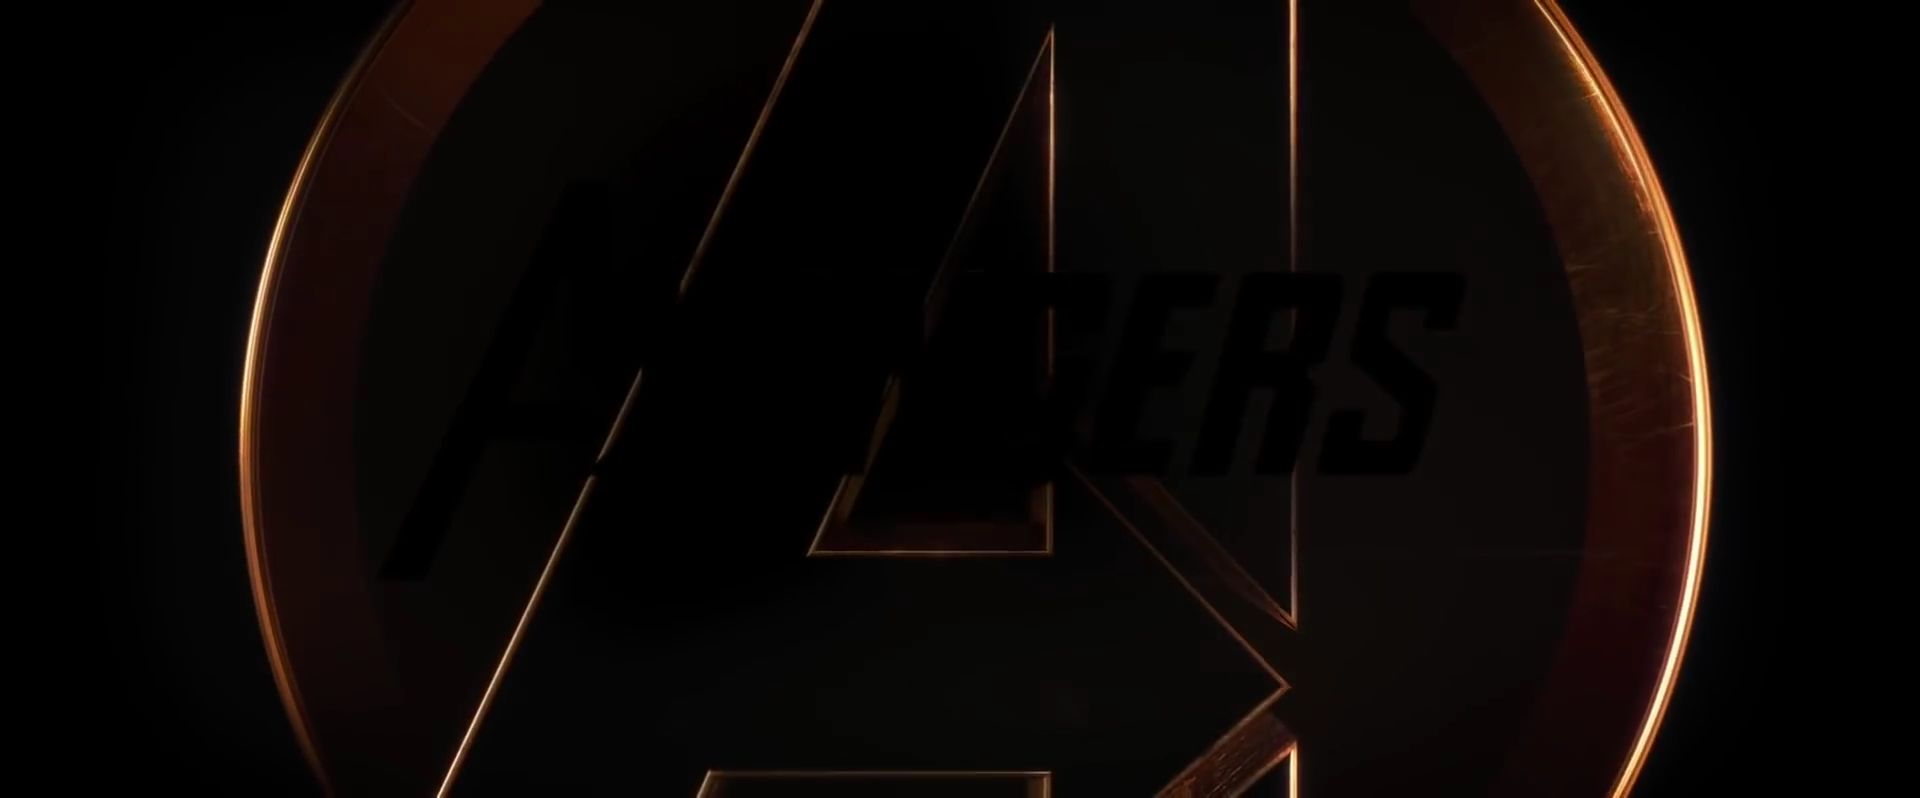 AvengersInfinityWarTrailer1_0201.jpg